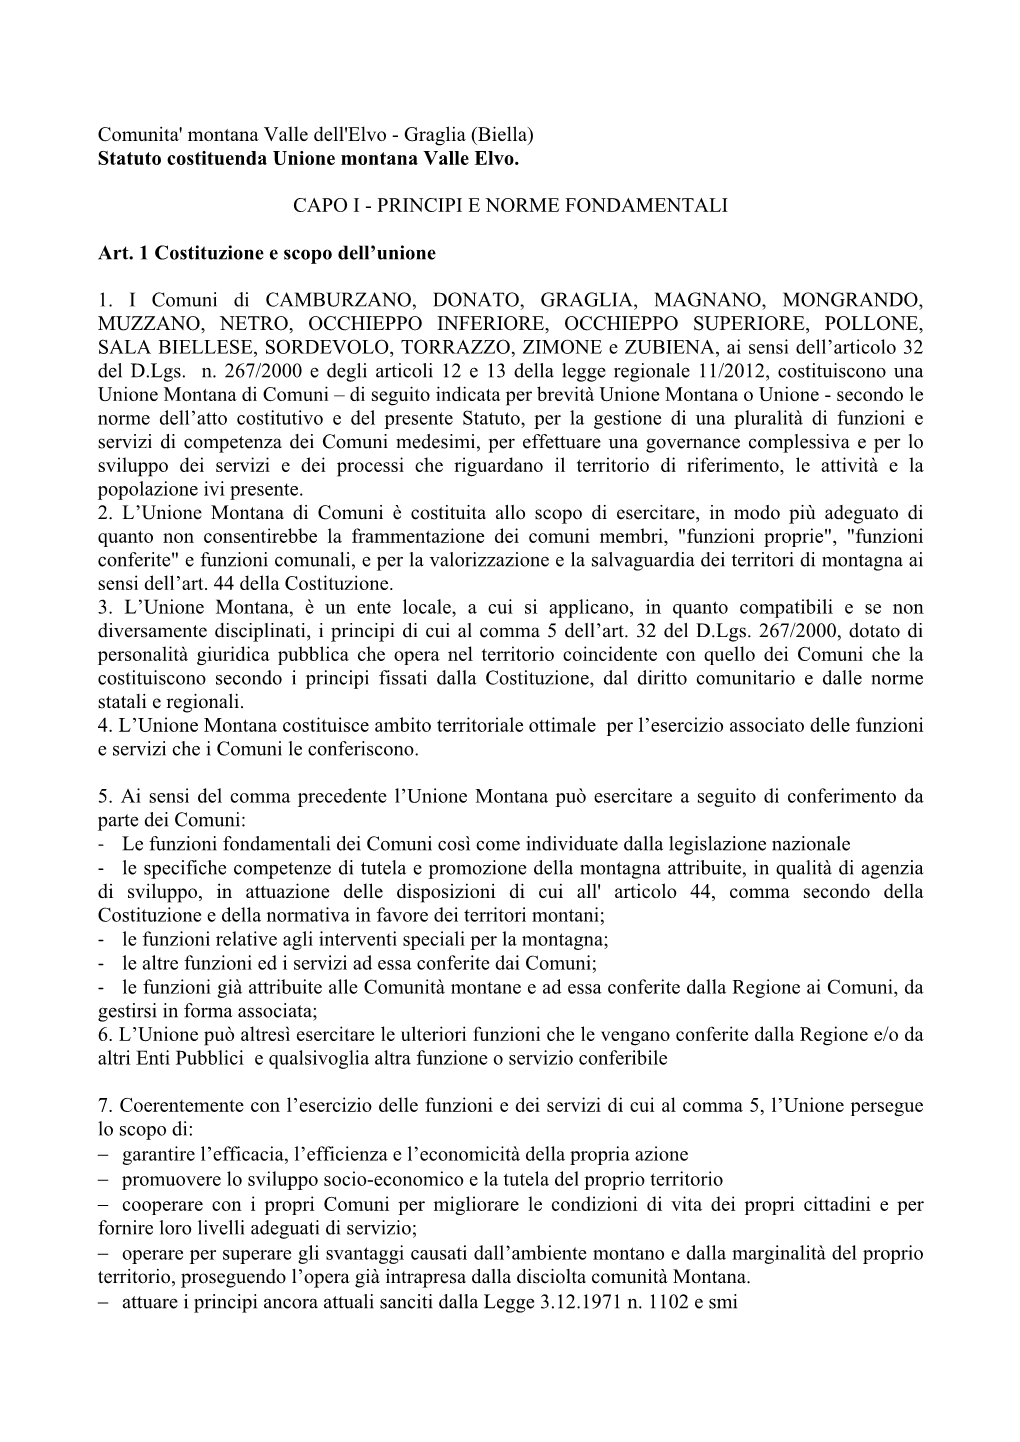 Graglia (Biella) Statuto Costituenda Unione Montana Valle Elvo. CAPO I